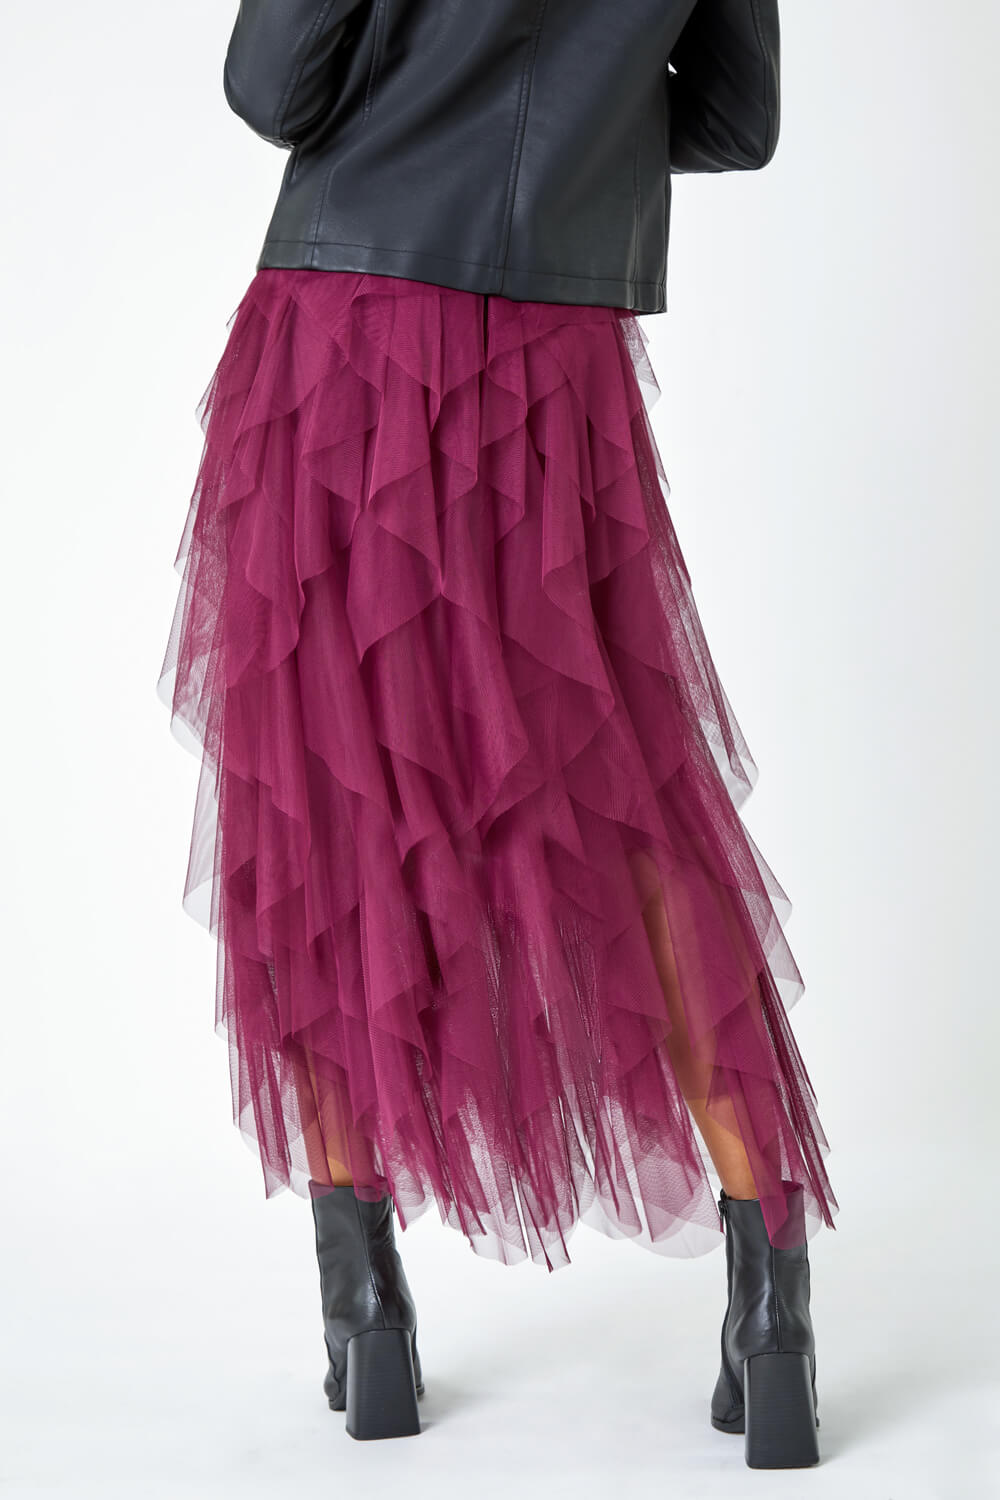 Wine Elasticated Mesh Layered Skirt, Image 3 of 5